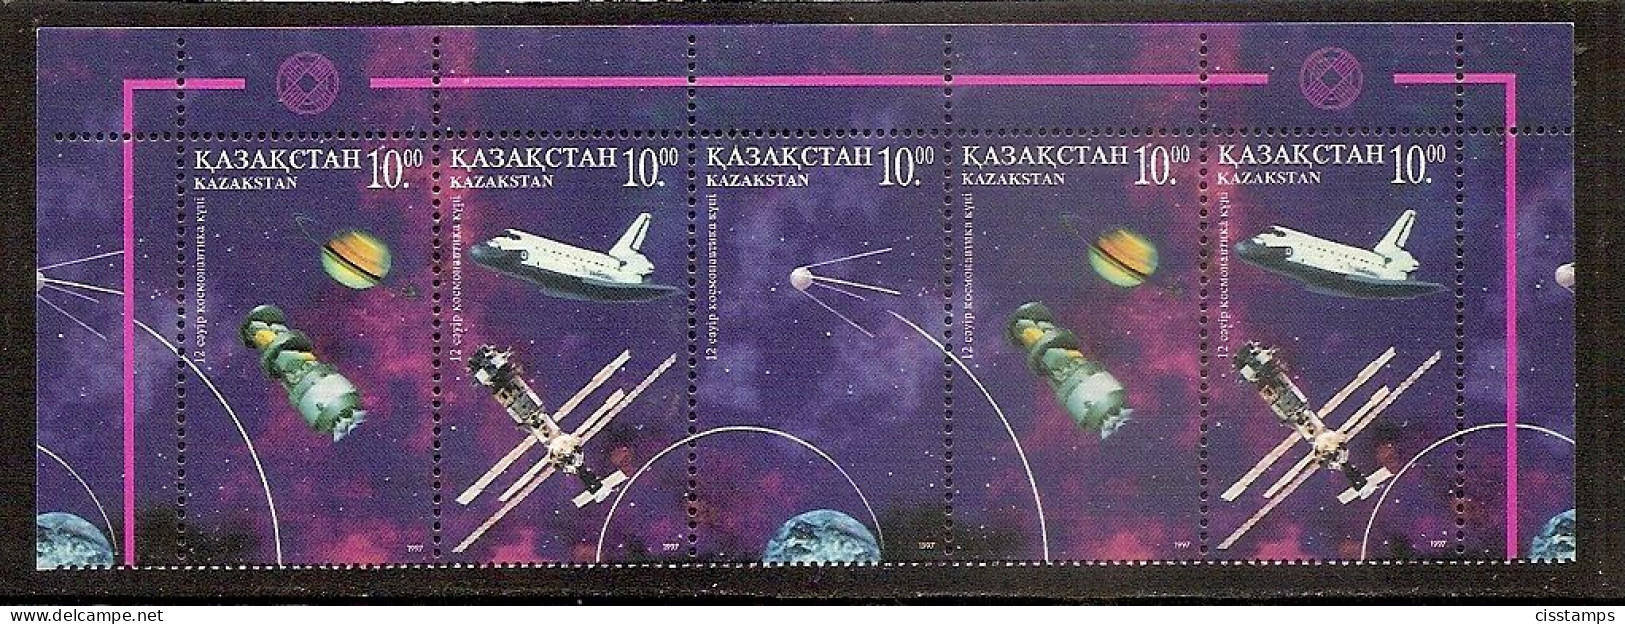 KAZAKHSTAN 1997●Space●Cosmonautic Day●●Tag Der Kosmonauten●Mi163-65 MNH - Kazakhstan